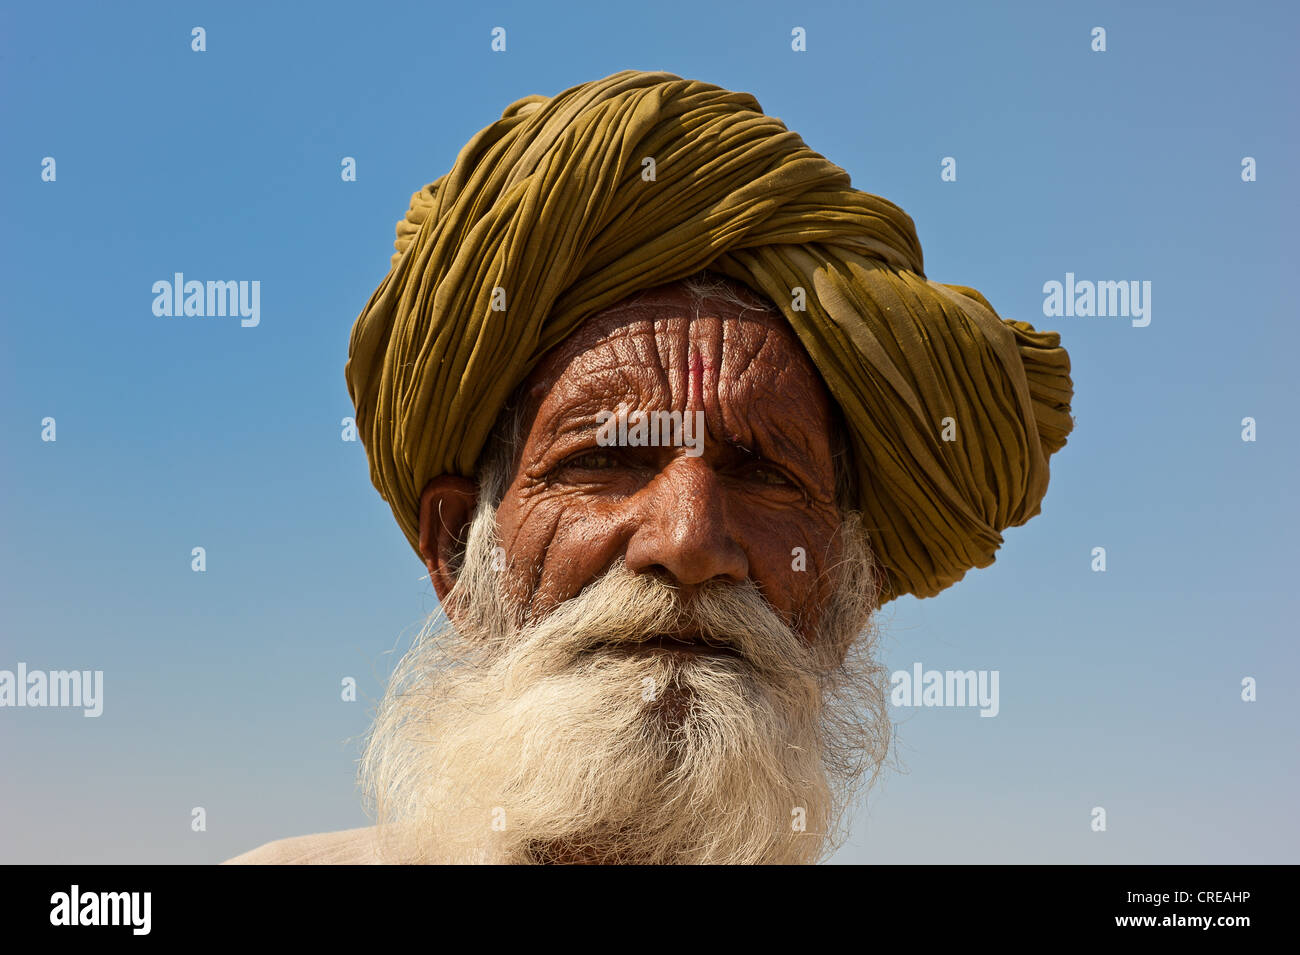 Porträt von einem älteren Rajasthani, indischer Mann mit einem grauen Bart mit traditionellen Turban Thar-Wüste, Rajasthan, Indien, Asien Stockfoto